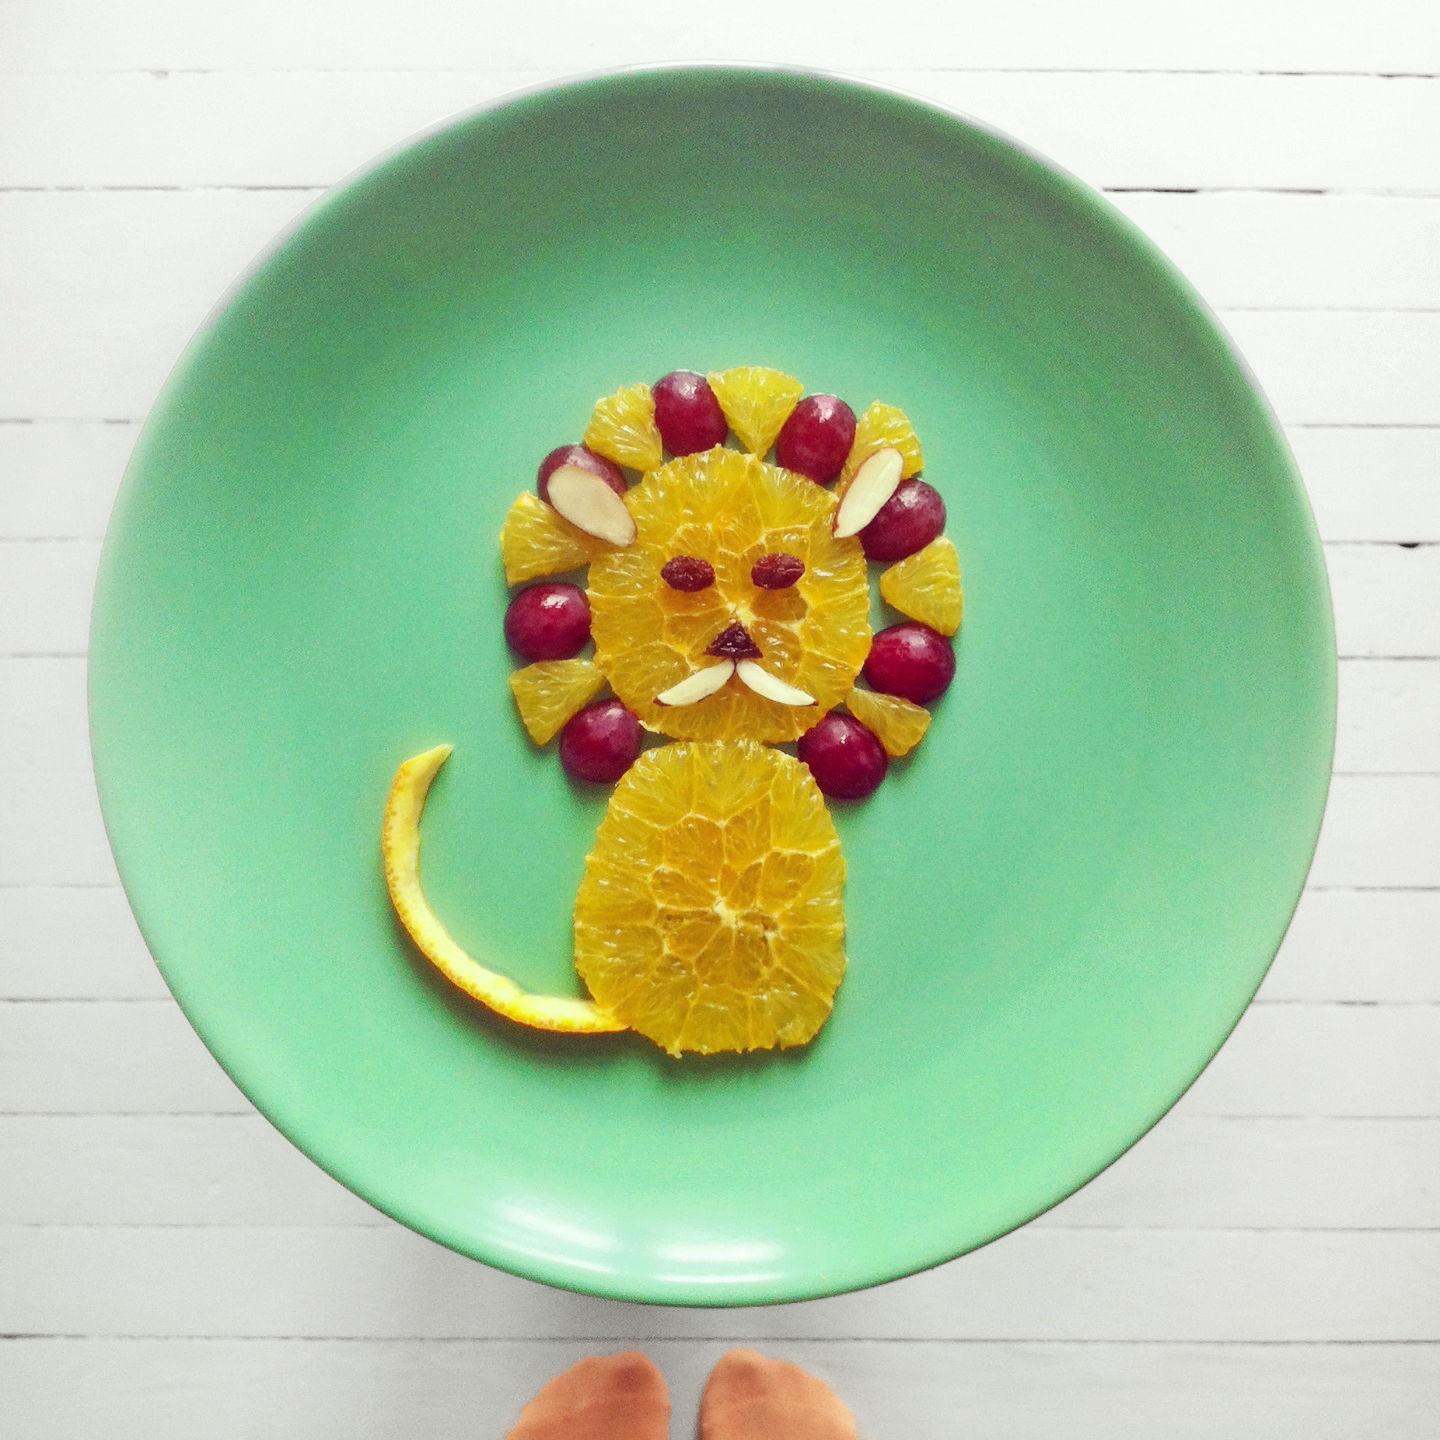 APPELSINLØVE: Ida Skivenes lager små matkunstverk. Bildene deler hun på Instagram under navnet Idafrosk. FOTO: Ida Skivenes